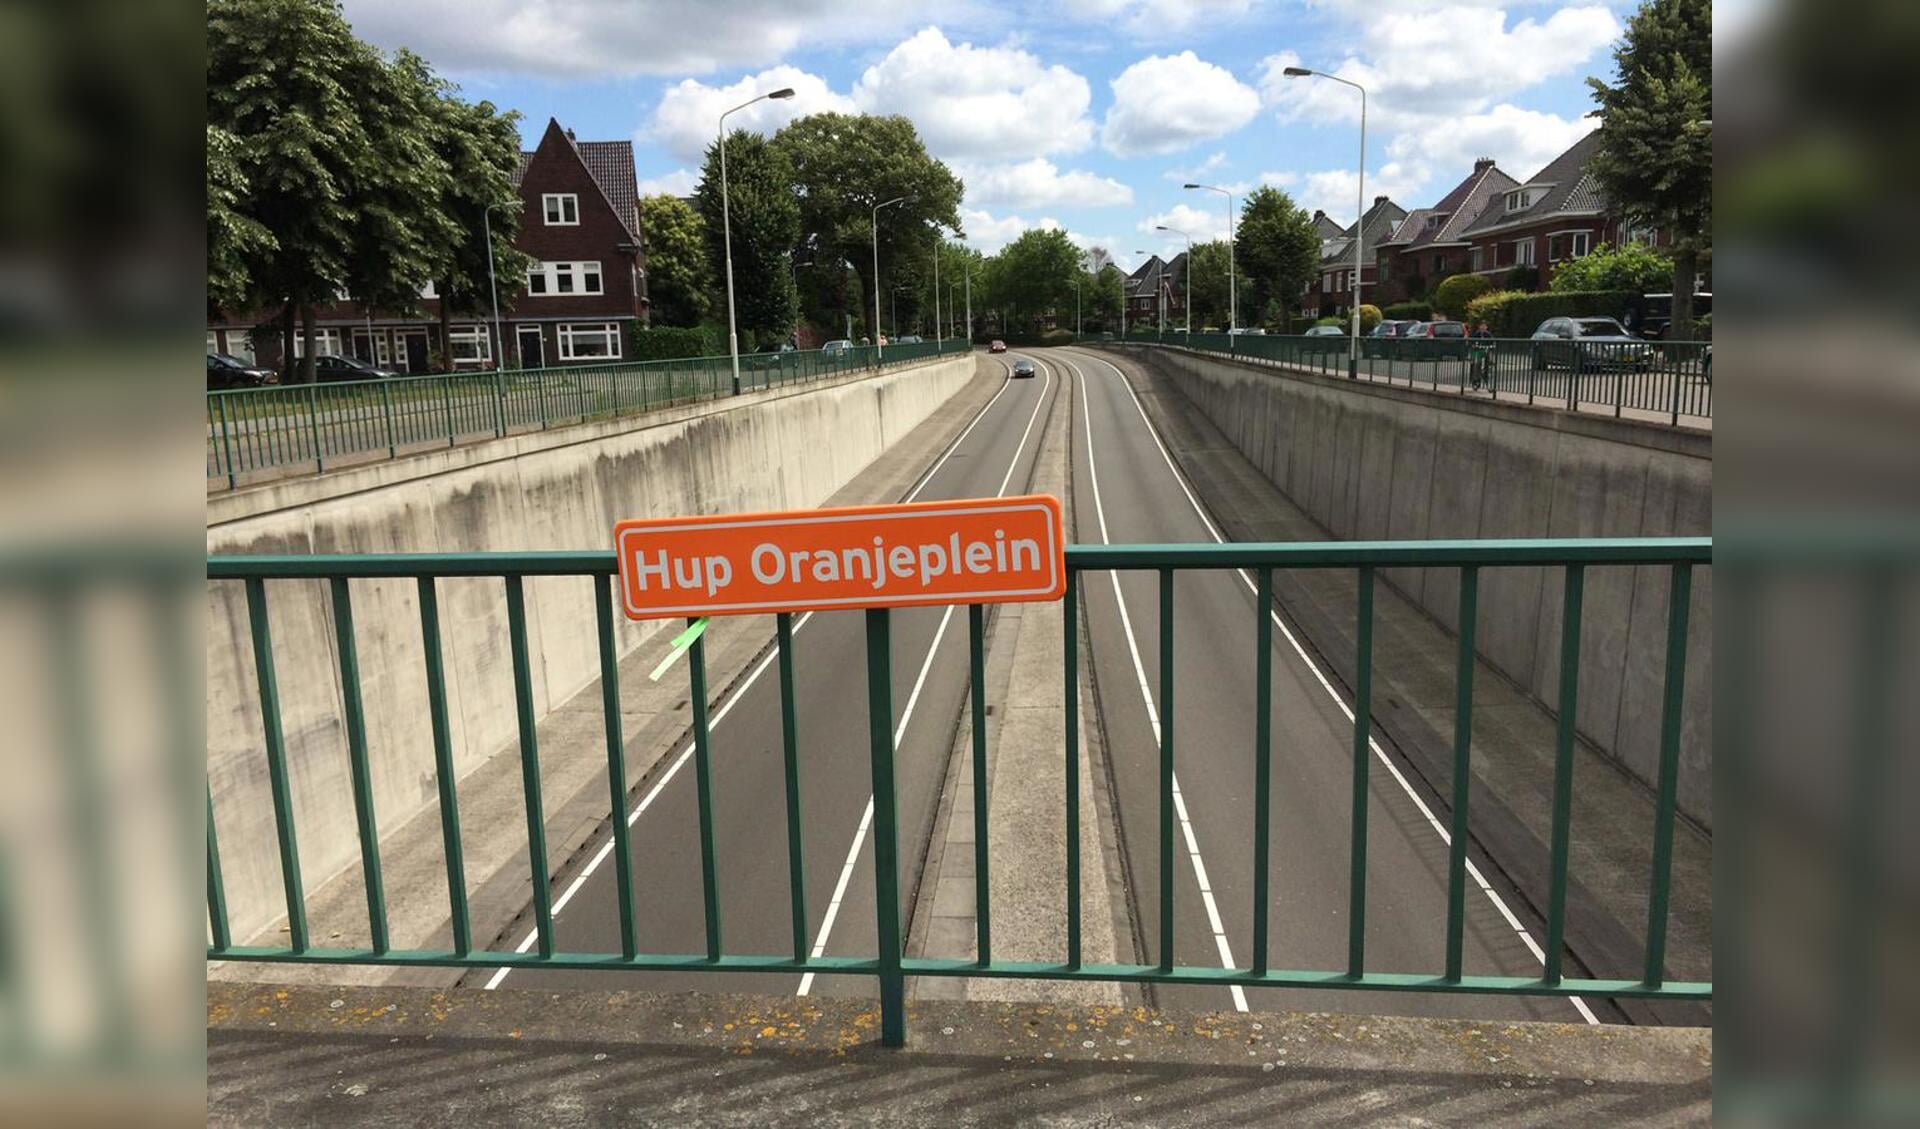 Tijdens het WK Voetbal in 2014 kreeg het Oranjeplein toch even een officieel straatnaambordje 